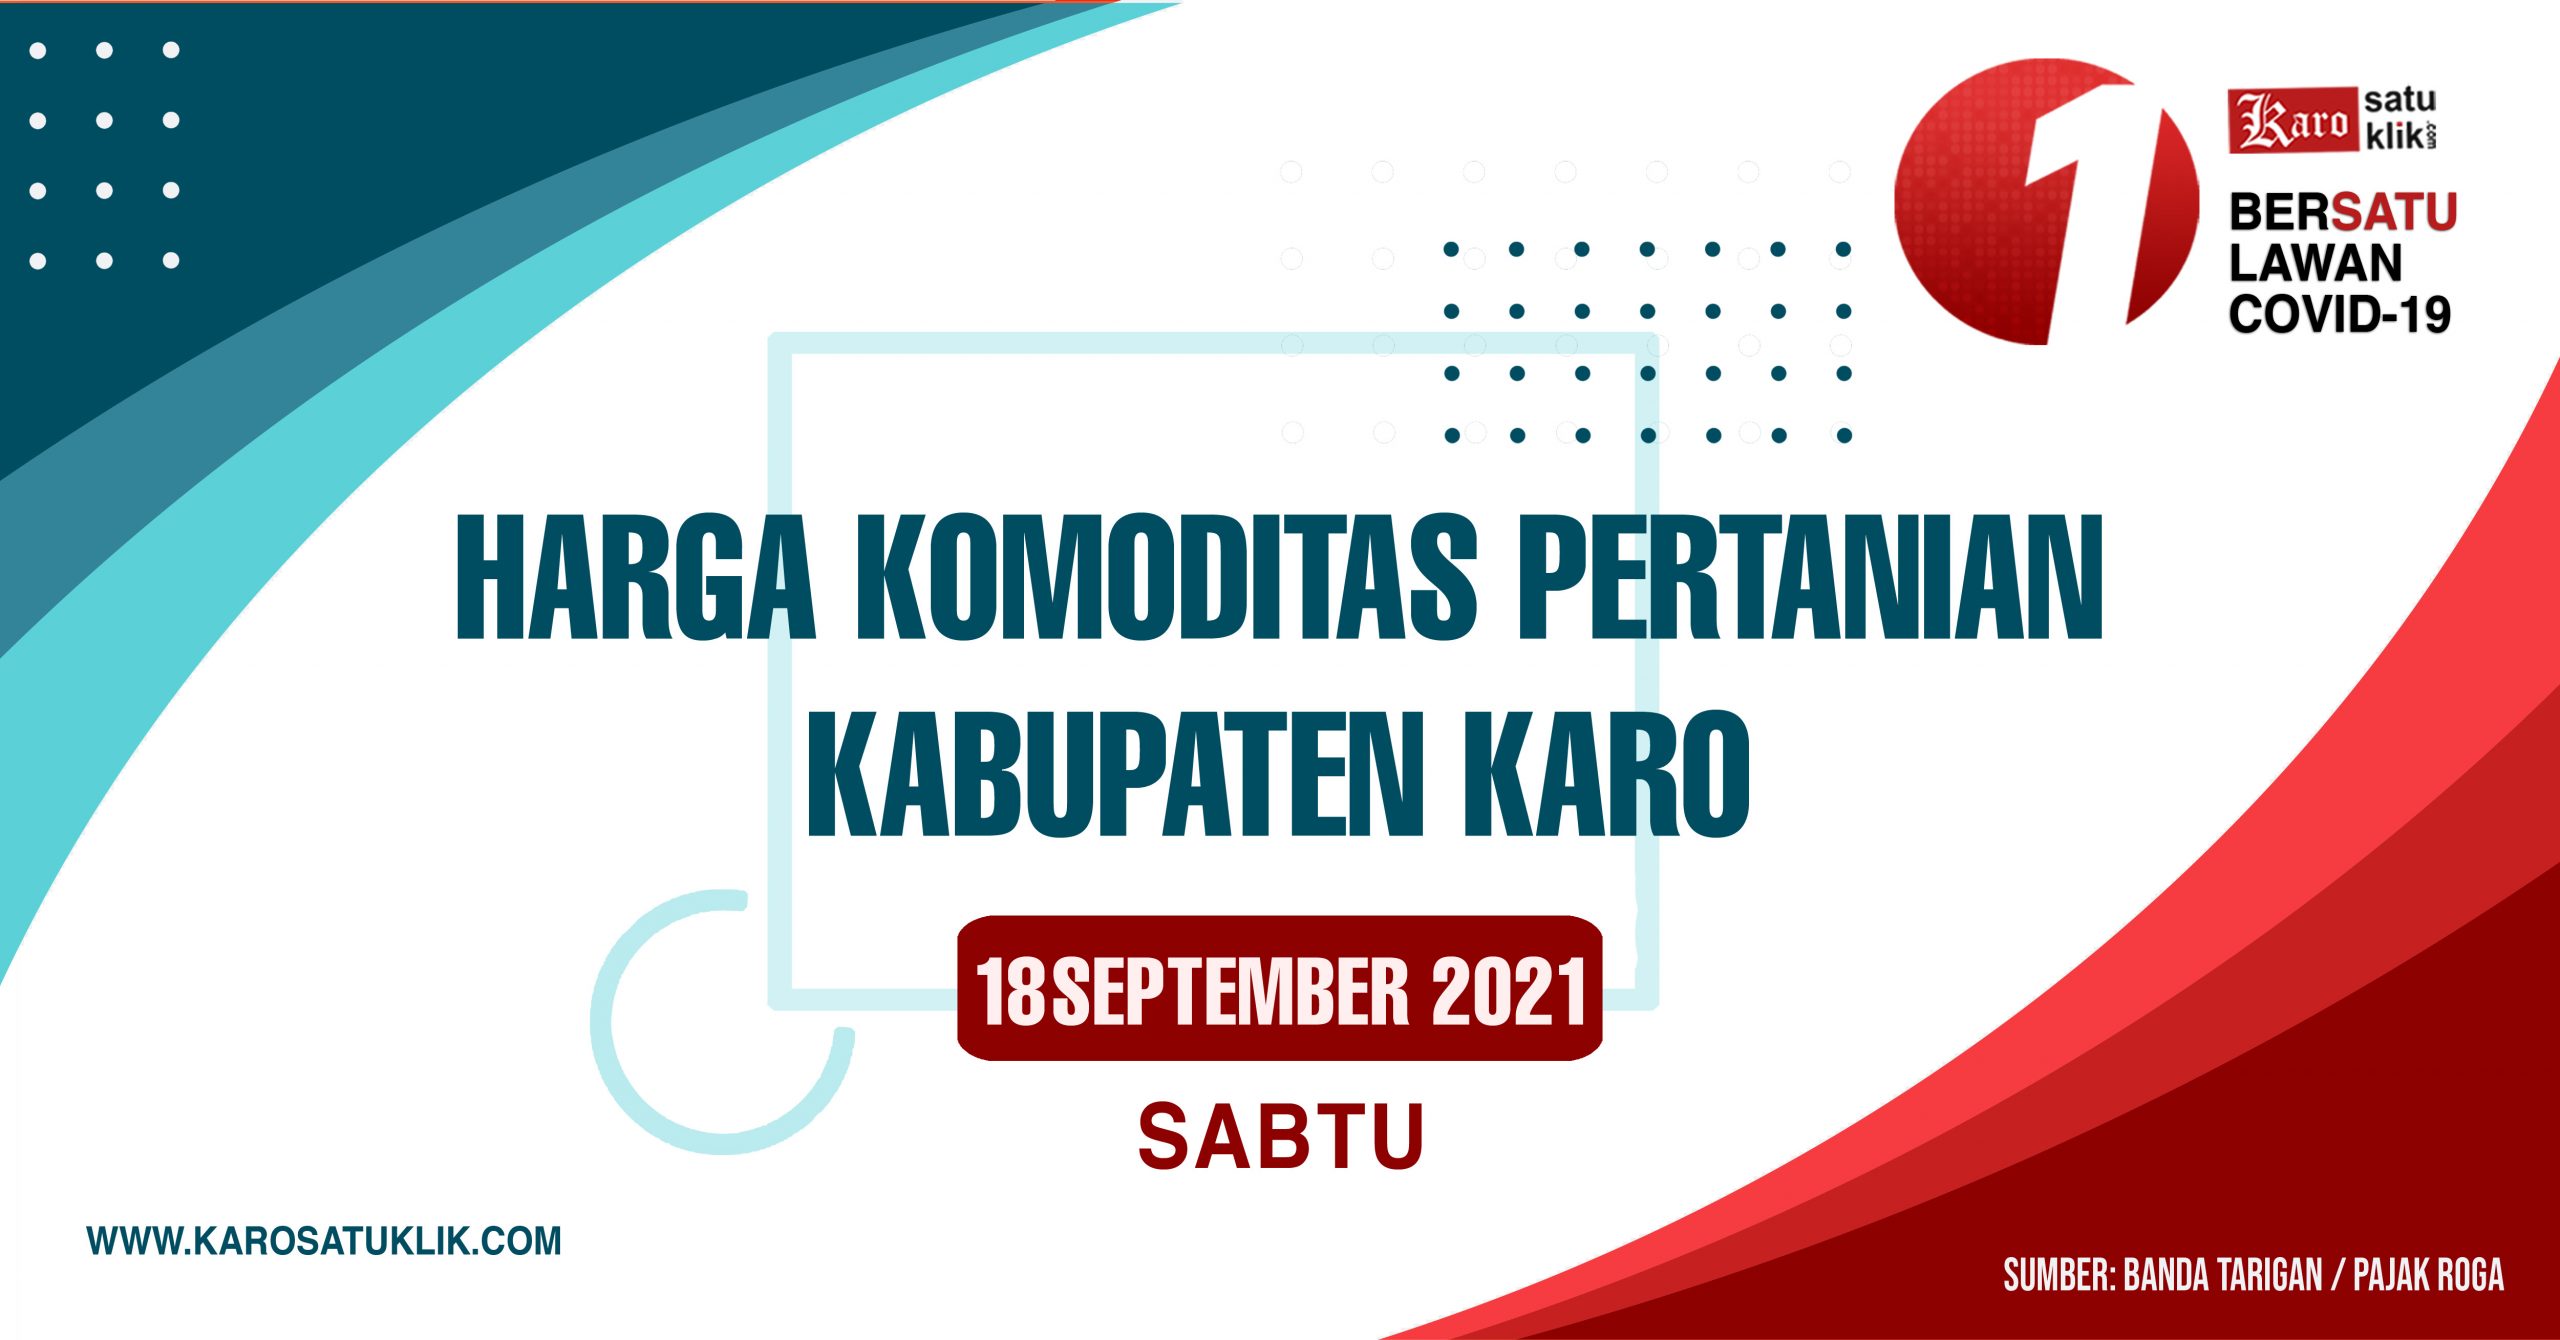 Daftar Harga Komoditas Pertanian Kabupaten Karo, 18 September 2021